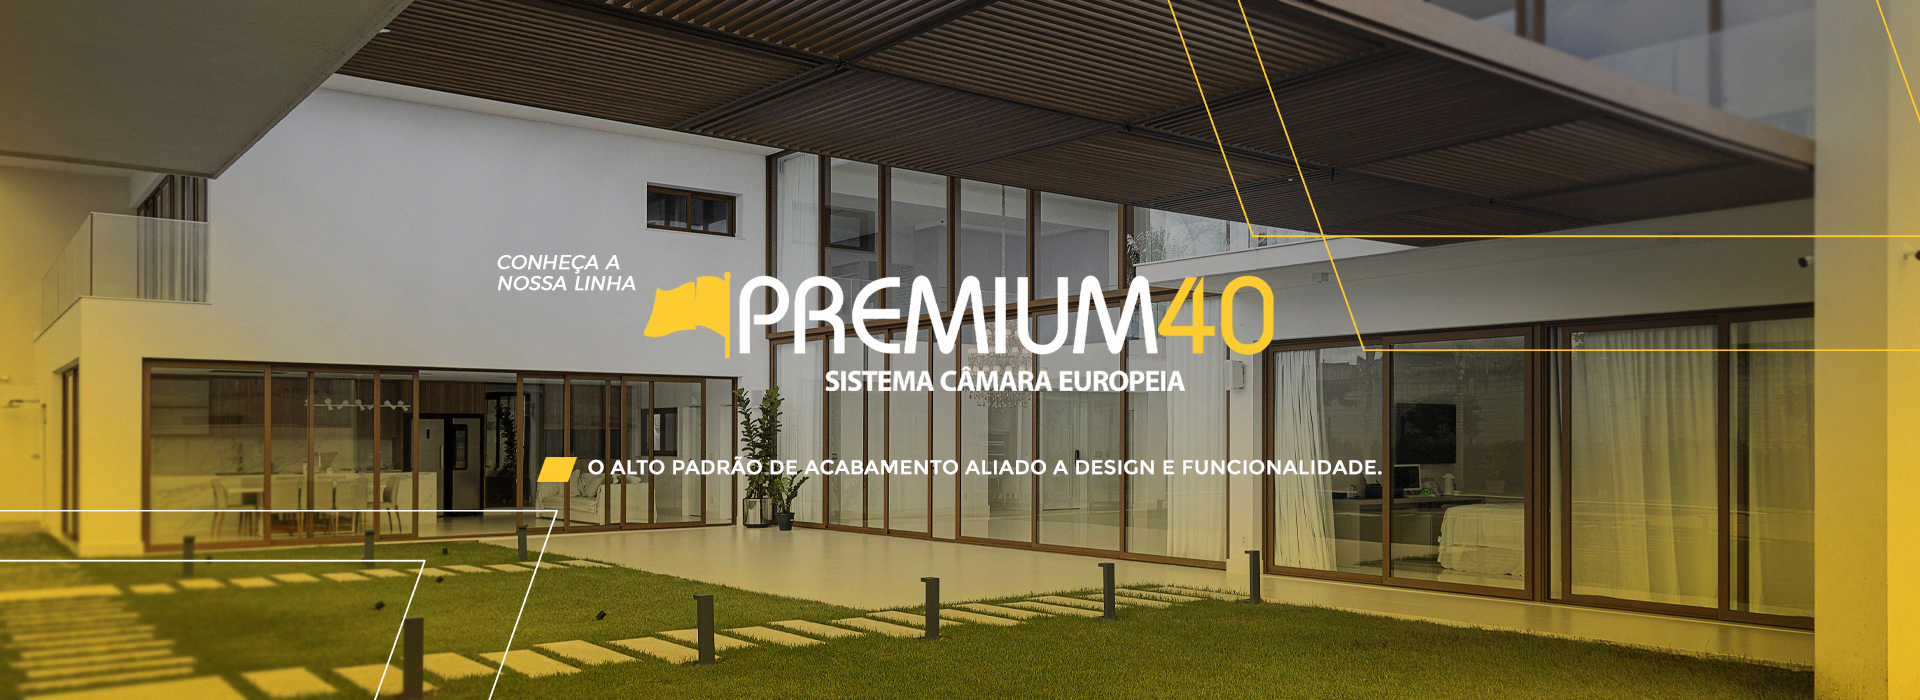 Premium 40